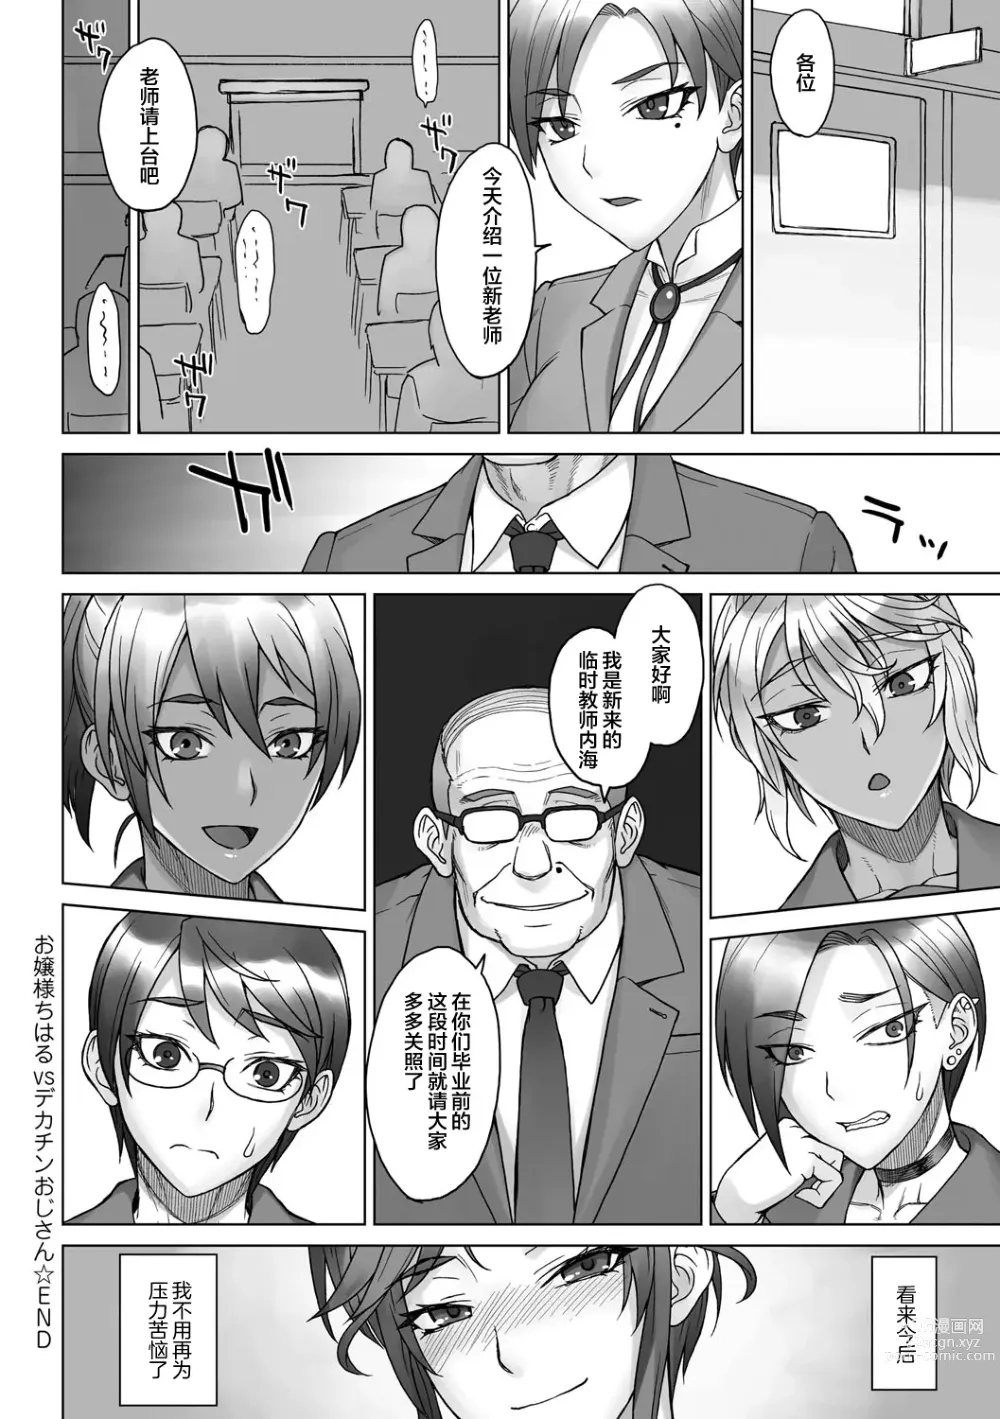 Page 16 of doujinshi Ojou-sama Chiharu VS Dekachin Oji-san + Dekachin Oji-san after